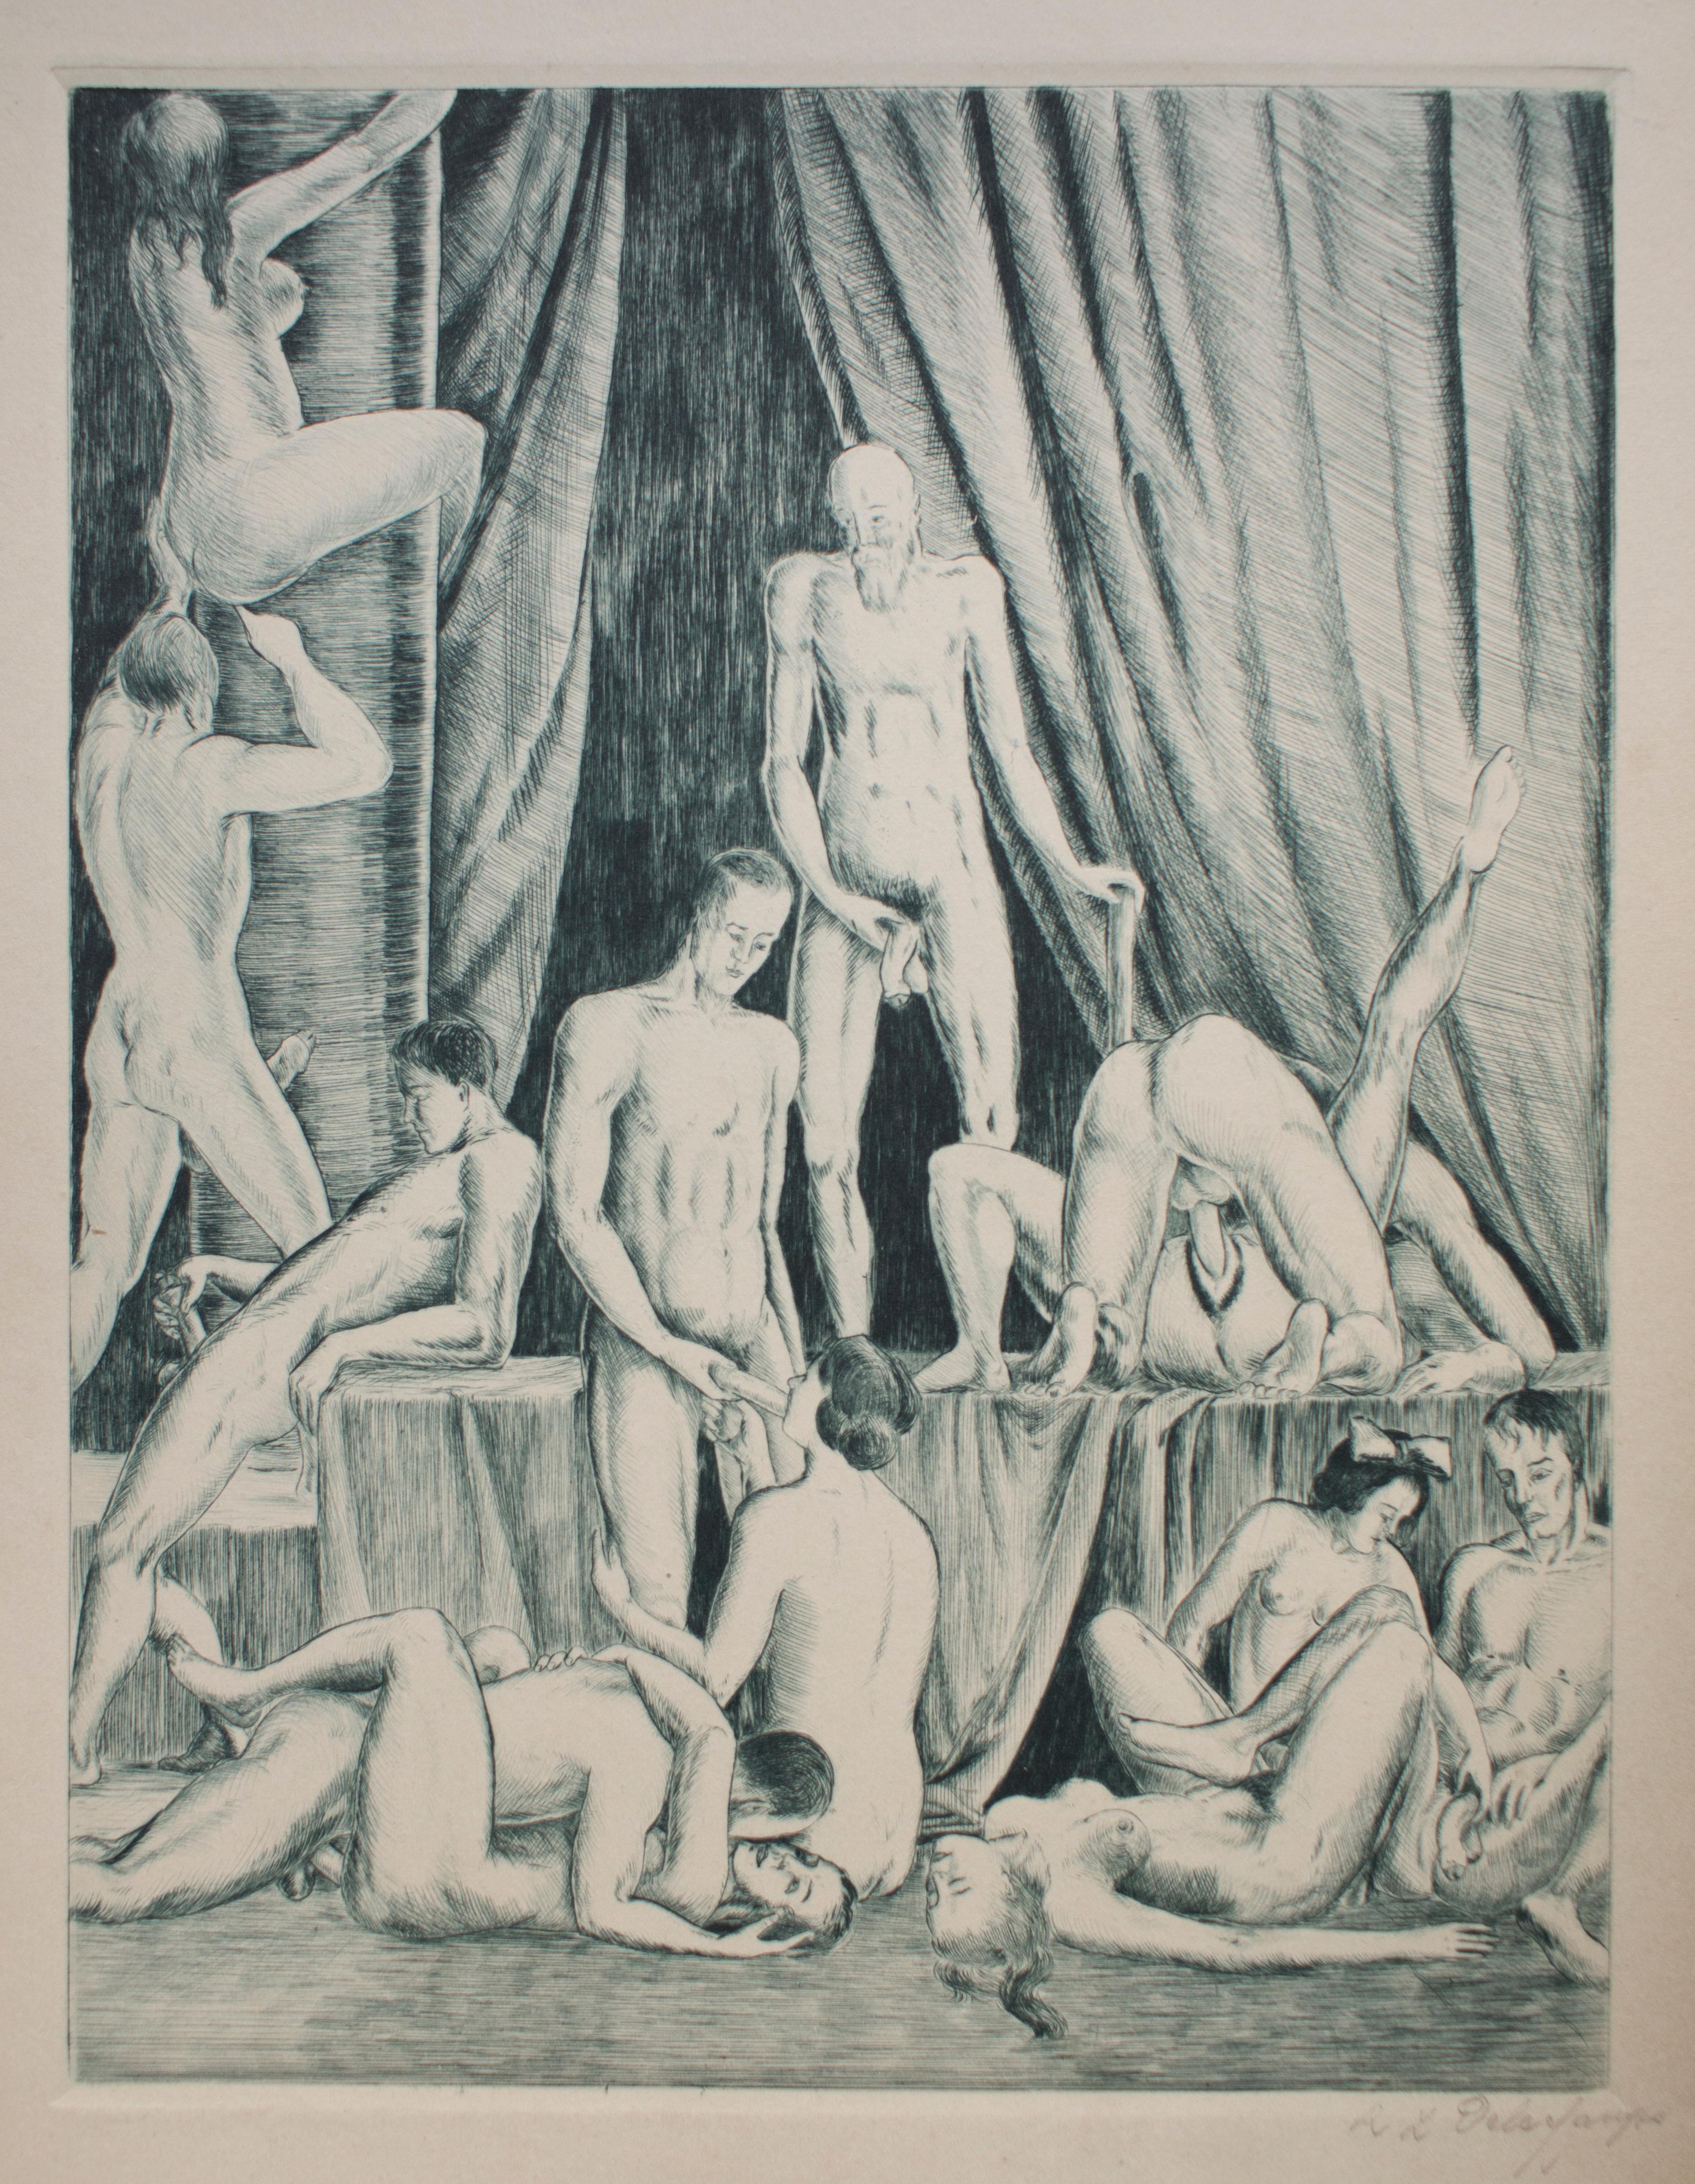 La Bible Noire - Rare Complete Suite of Etchings by R.L. Delechamps - 1921 - Print by R.L. Delechamps (pseudonym)